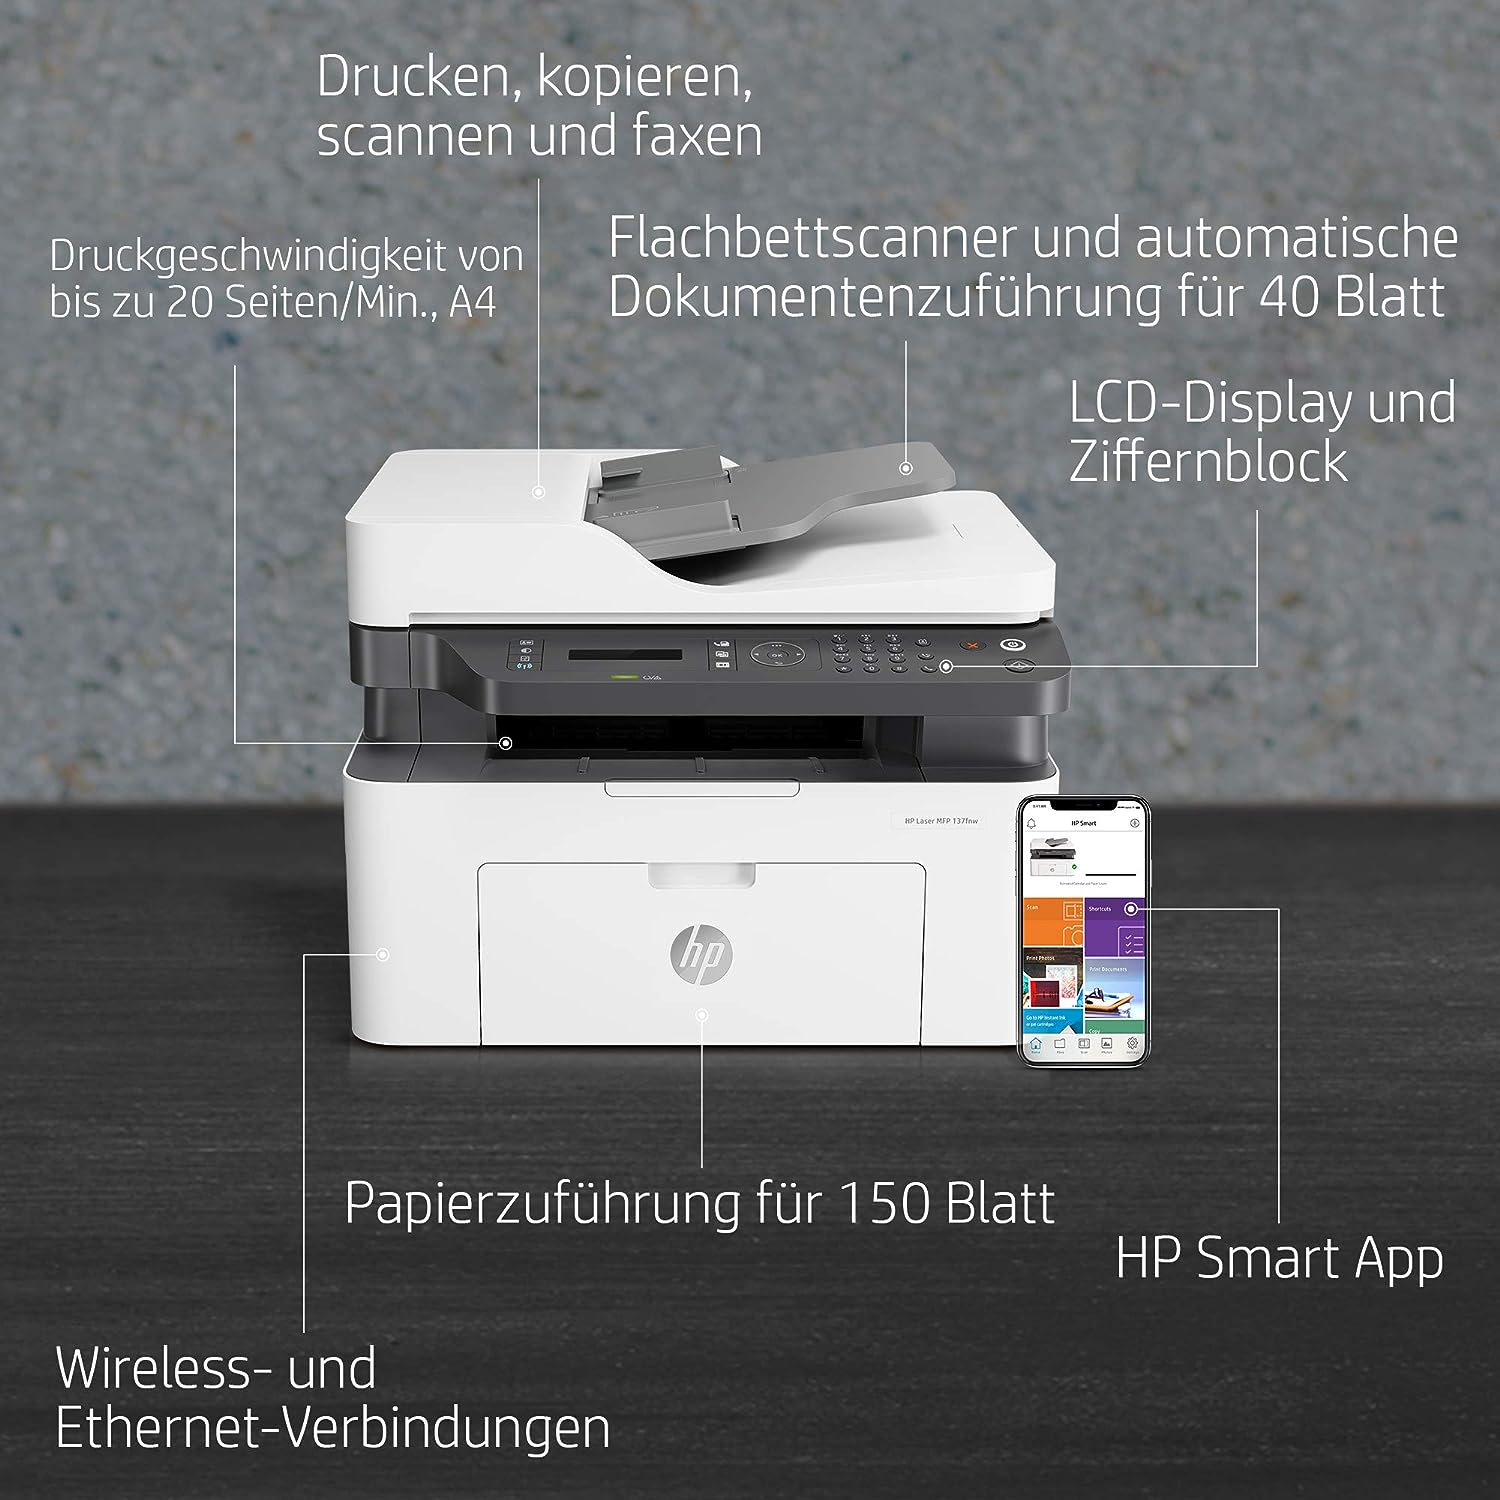 HP Laser 137fnw (3-in-1) - Laser- Multifunktionsdrucker (Laserdrucker, Kopierer, Scanner, Fax, WLAN)